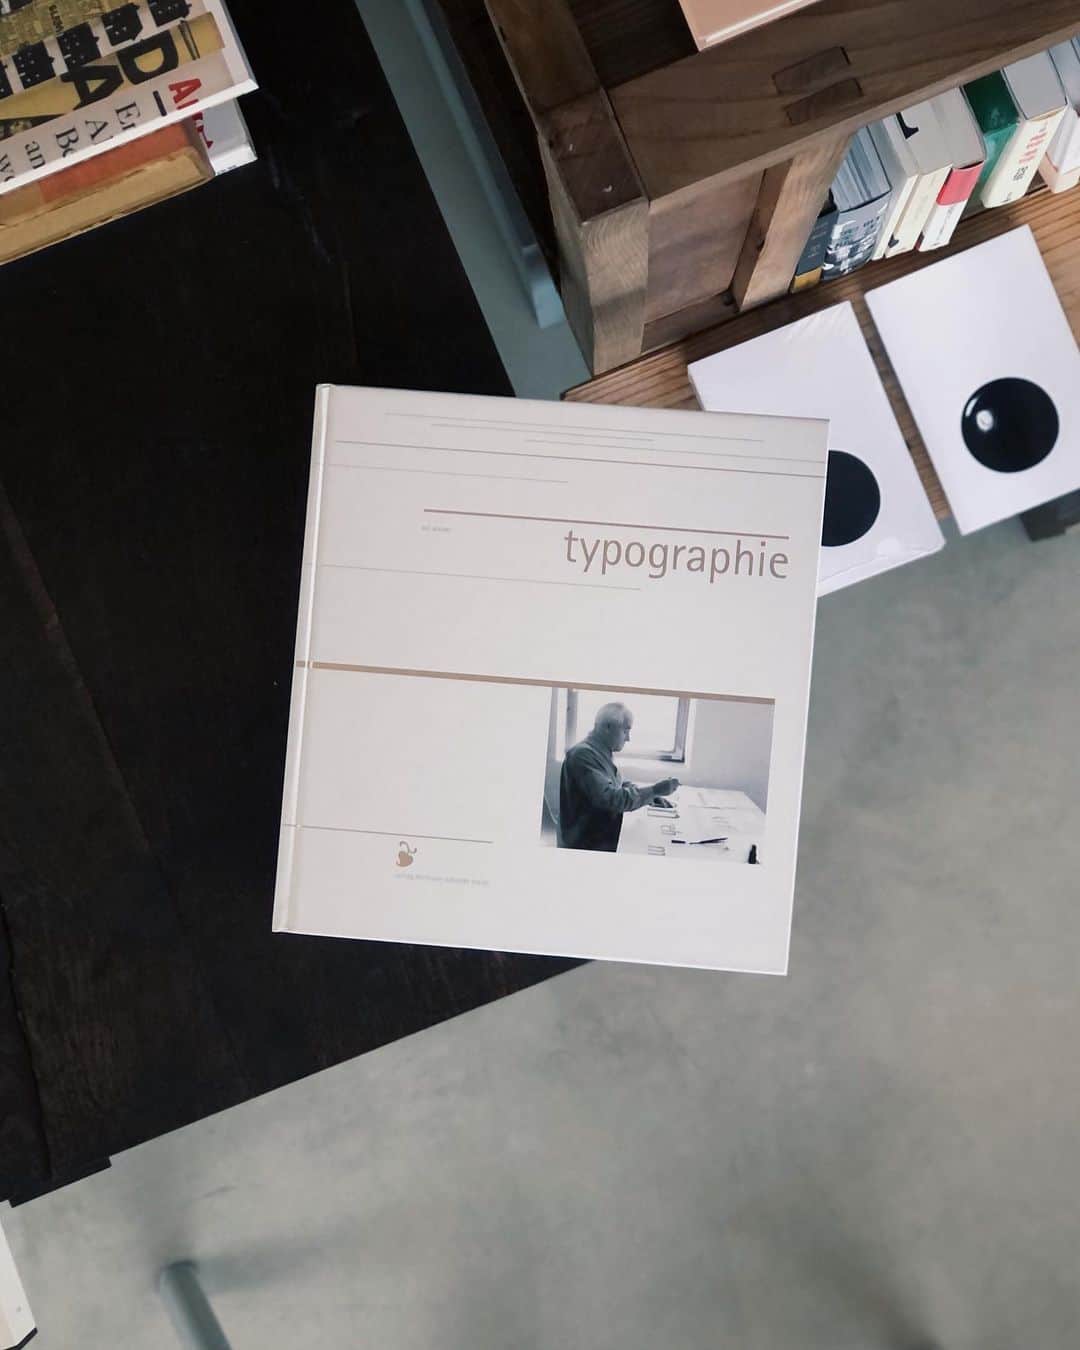 nostos booksのインスタグラム：「本日は『日本の近代活字 本木昌造とその周辺』、ピーター・サヴィルやオトル・アイヒャーの作品集、武井武雄『妖精伝説』、ヴァチカン教皇庁図書館展図録など40冊を入荷しました。  オンラインストアへは商品タグをタップ◯ 　 入荷本からおすすめ10選  ----------  1冊目 『Typographie』 20世紀ドイツを代表するグラフィックデザイナー・タイポグラファーであり、ウルム造形大学の創設者、オトル・アイヒャーの著作。アイヒャーのタイポグラフィに対するアプローチや哲学、そして方法論をまとめたもの。   ----------  2冊目 『日本の近代活字 本木昌造とその周辺』 日本の活版印刷術普及に大きな役割を果たした本木昌造を中心とする、日本の活版印刷の黎明期の状況などを紹介。1999年に発足した「本木昌造・活字復元プロジェクト」の一環として刊行されたもの。   ----------  3冊目 『Designed by Peter Saville』 ジョイ・ディビジョンのアートワークなどで知られる、イギリスのグラフィックデザイナー／ピーター・サヴィルの作品集。CDジャケット、パッケージ、ブックデザイン、ポスターデザインなどをカラーで多数掲載。  ----------  4冊目 『Artists Who Make Books』 国際的に活躍する32人のアーティストが手掛けた本にまつわる仕事を紹介した資料集。アンディ・ウォーホル、ソフィ・カル、河原温、ウォルフガング・ティルマンスなどの作品を解説とともに掲載。  ----------  5冊目 『本の美術』 装幀家、版画家、詩人である恩地孝四郎による装本美術論。ブックデザインにまつわる論説や、装本書影を掲載。別冊には植村鷹千代による解説や、恩地孝四郎装本拾遺、恩地孝四郎年譜などを収録。   ----------  6冊目 『妖精伝説』 グラフィックデザイナー、童話作家・童画家として知られる武井武雄のショートストーリー。さまざまな種類の妖精にまつわる短編を挿絵とともに収録。限定1000部。  ----------  7冊目 『ヴァチカン教皇庁図書館展 II 書物がひらくルネサンス』 2015年に印刷博物館で開催された展示図録。ヴァチカン教皇庁図書館所蔵の中世写本、初期刊本、地図、書簡類計21点を中心に、印刷博物館および国内諸機関所蔵の書物を加えた計69点を収録、紹介した一冊。   ----------  8冊目 『ヴァチカン教皇庁図書館展 書物の誕生 写本から印刷へ』 2002年に印刷博物館で開催された「ヴァチカン教皇庁図書館展 書物の誕生 写本から印刷へ」の図録。聖書の歴史からみた書物のはじまりと、その写本から印刷本への変換を、多数のカラー図版とともに辿る。  ----------  9冊目 『欧文書体百花事典』 古典から現代までに作られてきた、300もの主要欧文書体を収録。ヤン・チヒョルト、オトル・アイヒャーらタイポグラファーの功績を、白井敬尚や片塩二朗、河野三男たちが解説する。  ----------  10冊目 『活字文明開化 本木昌造が築いた近代』 2013年に開催された「活字文明開化 本木昌造が築いた近代」展の図録。日本における活版印刷の先駆者として知られる本木昌造の功績により、日本がいかに近代化を発展させたのかを解説。人物、技術、情報といったさまざまな視点から活字文化の重要性に迫る。  ----------  店舗情報はこちら @nostosbooks  ----------  #nostosbooks #ノストスブックス #祖師ヶ谷大蔵 #砧」